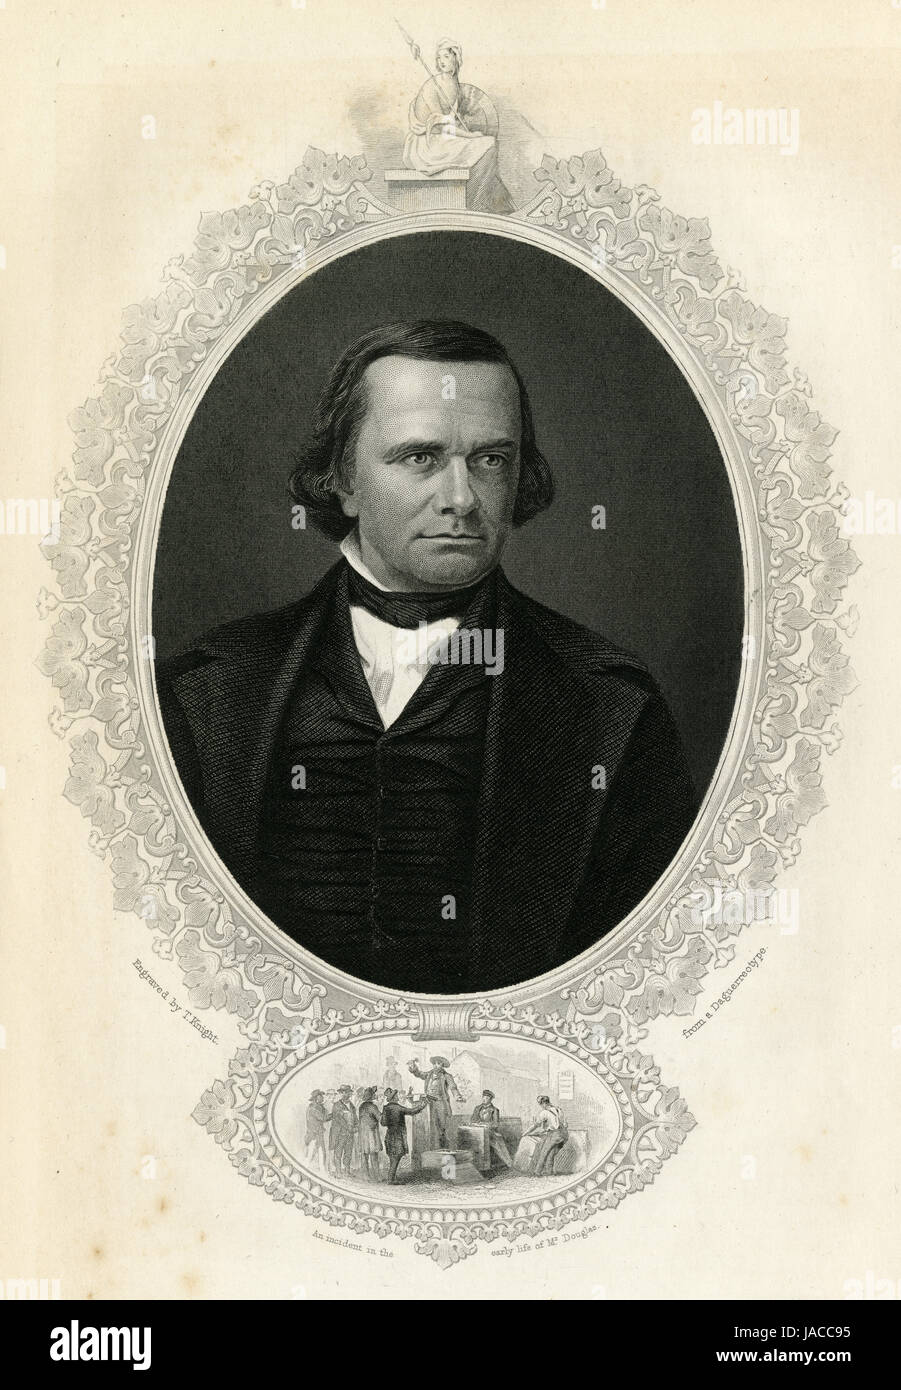 C Antique1860 gravure, Stephen Douglas. Stephen Douglas Arnold (1813-1861) était un homme politique américain de l'Illinois et le concepteur du Kansas Nebraska-loi. SOURCE : gravure originale. Banque D'Images